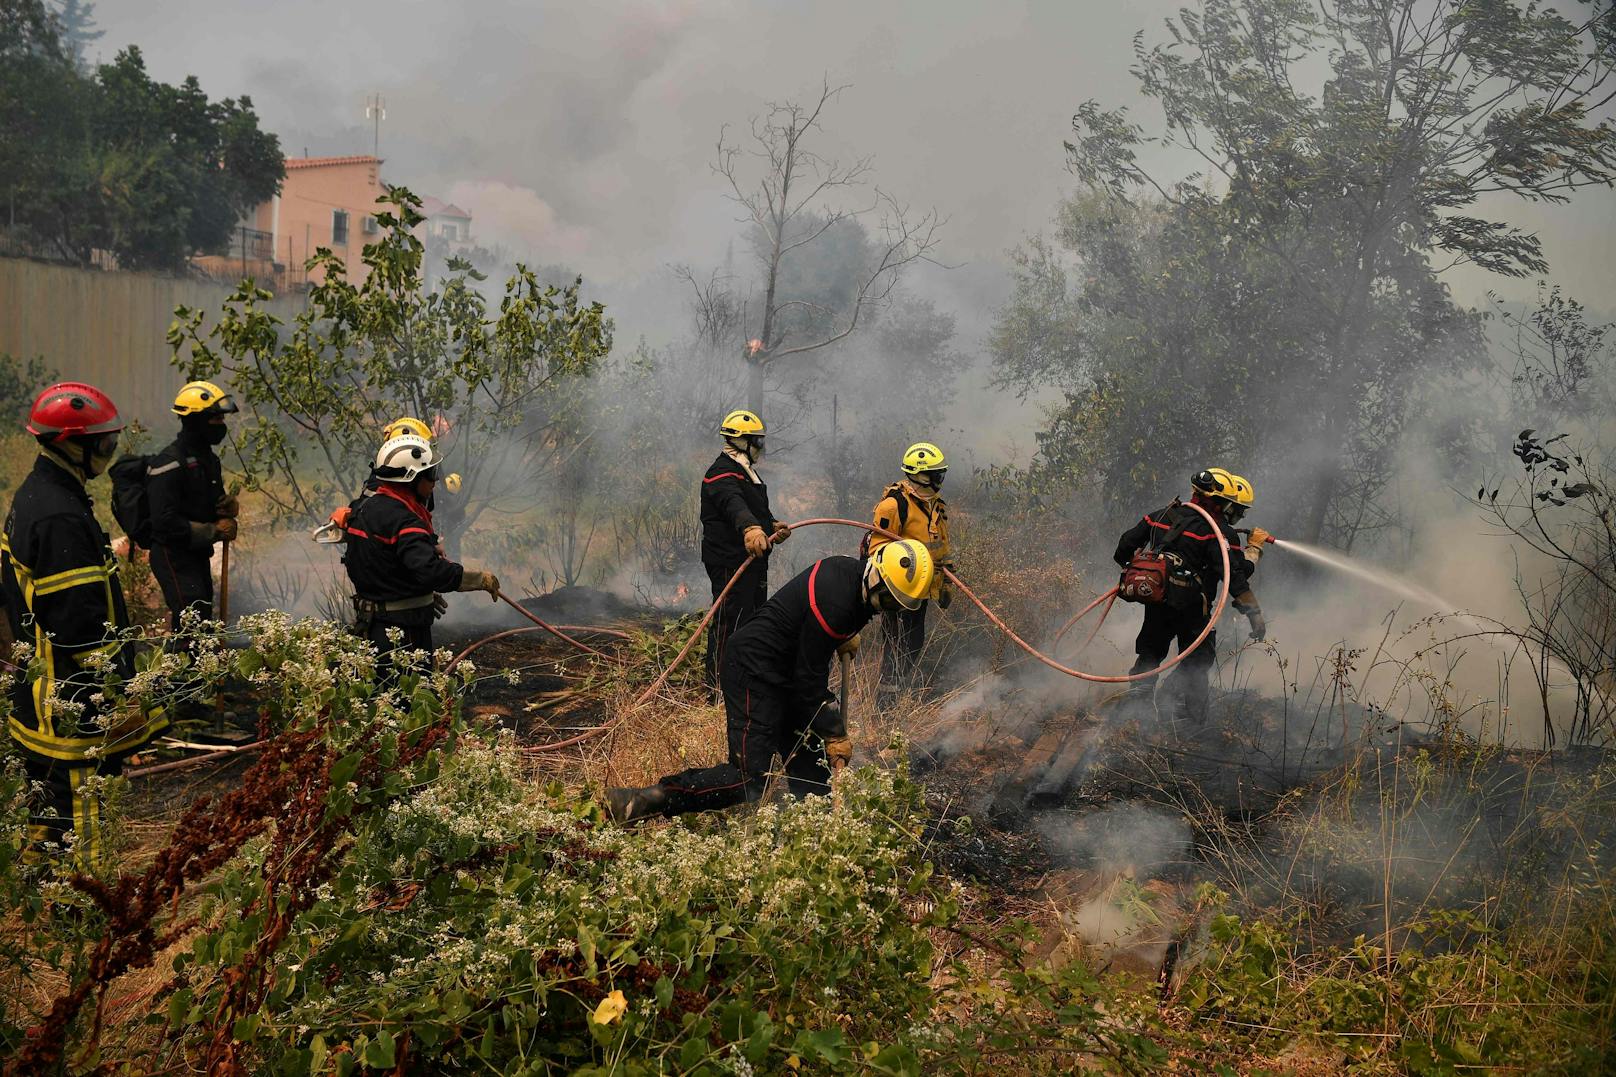 Die verheerenden Waldbrände wüten in Südeuropa unvermindert weiter. Laut Prognosen wird sich das Klima auch in Österreich so weit erhitzt haben, dass auch hierzulande die Gefahr steigt. Die Stadt Wien bereitet sich mit konkreten Vorbereitungsplänen darauf vor.